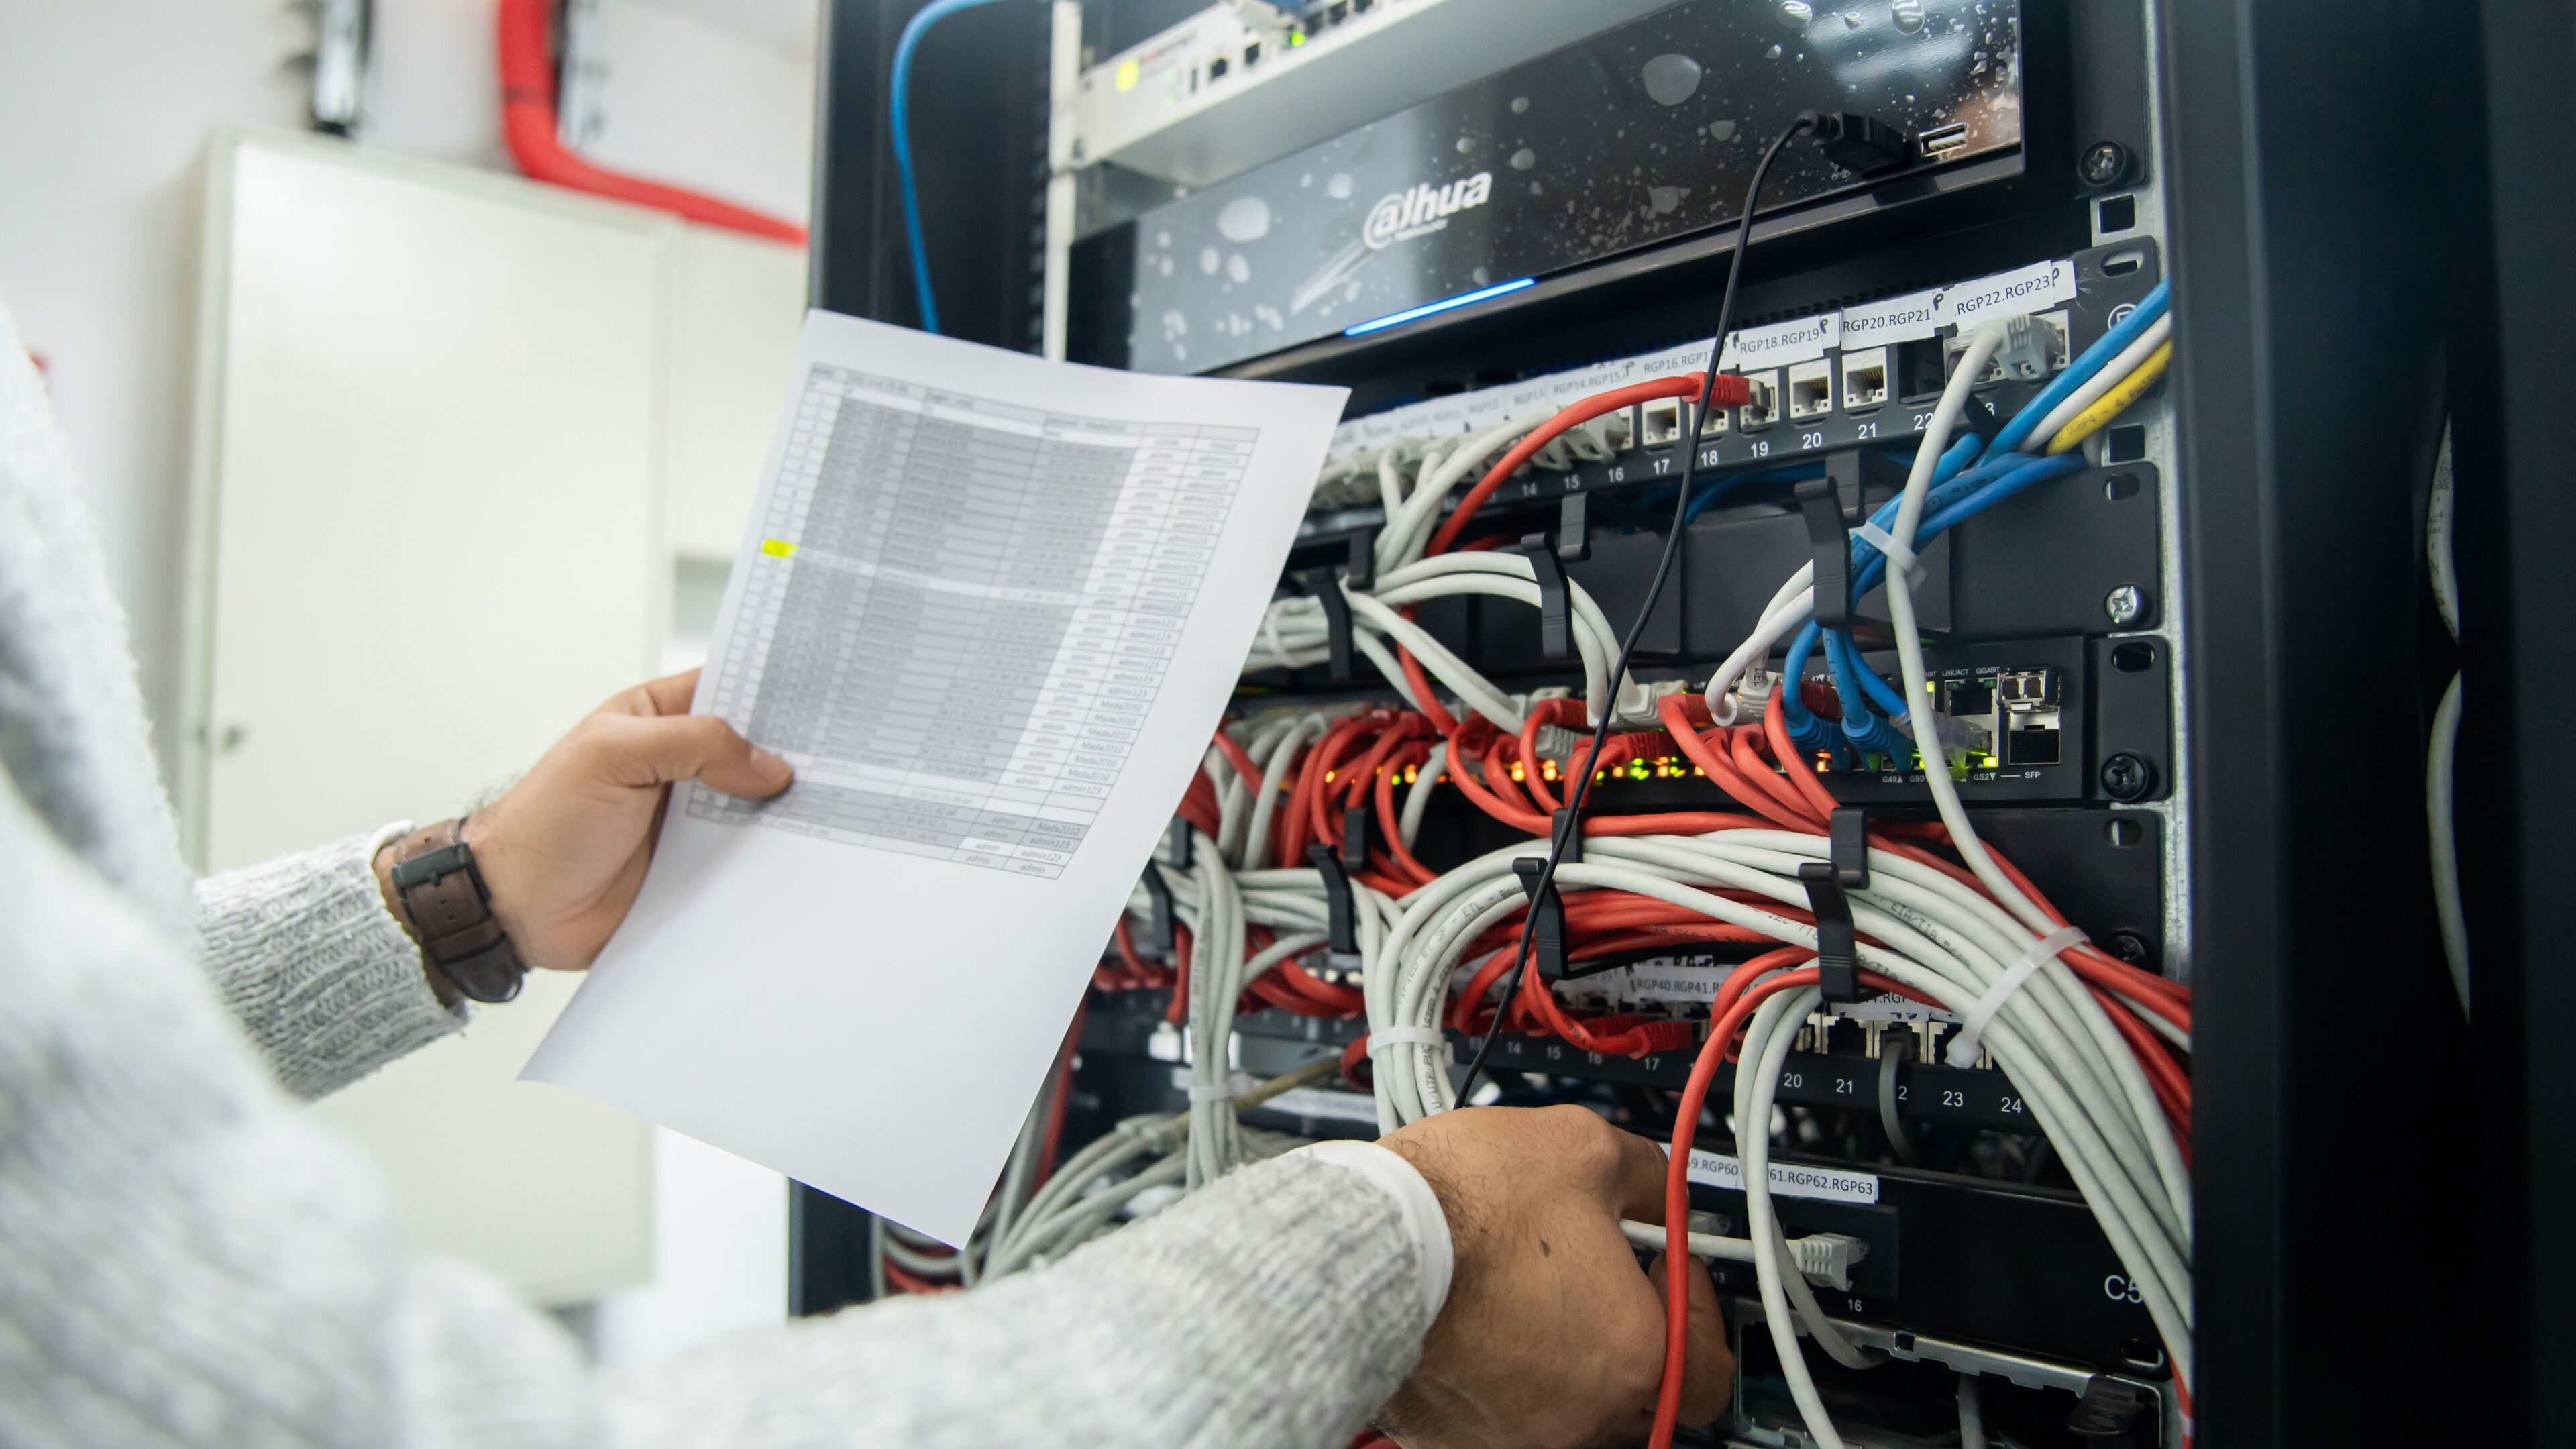 Un technicien dépanne un serveur réseau, examinant un document tout en ajustant les câbles sur un serveur monté en rack.